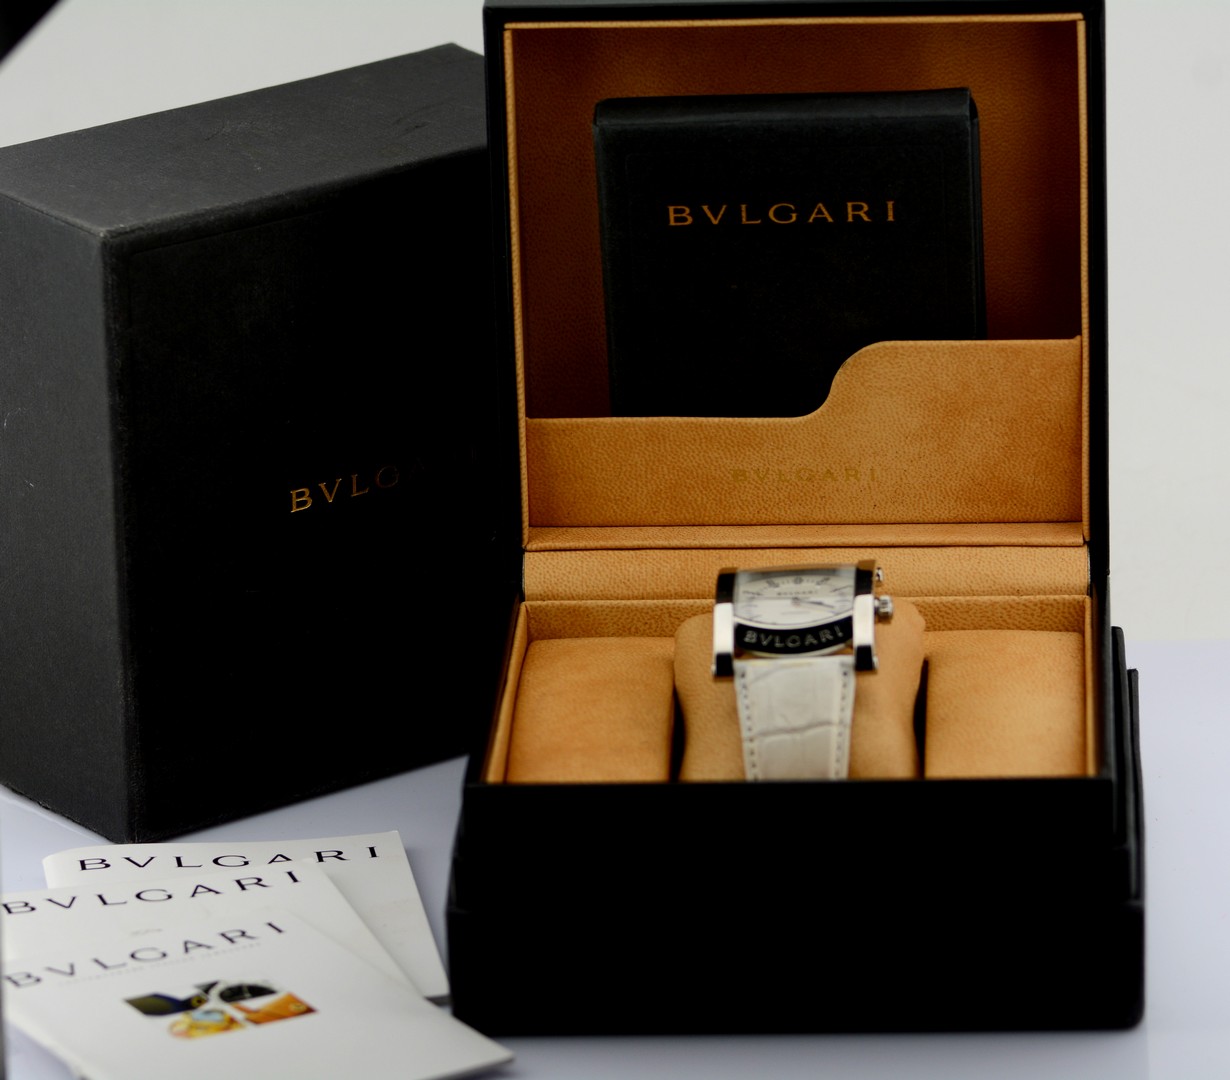 Bvlgari / AA44S Diamond Mother of Pearl Dial - Gentlemen's Steel Wristwatch - Image 11 of 11